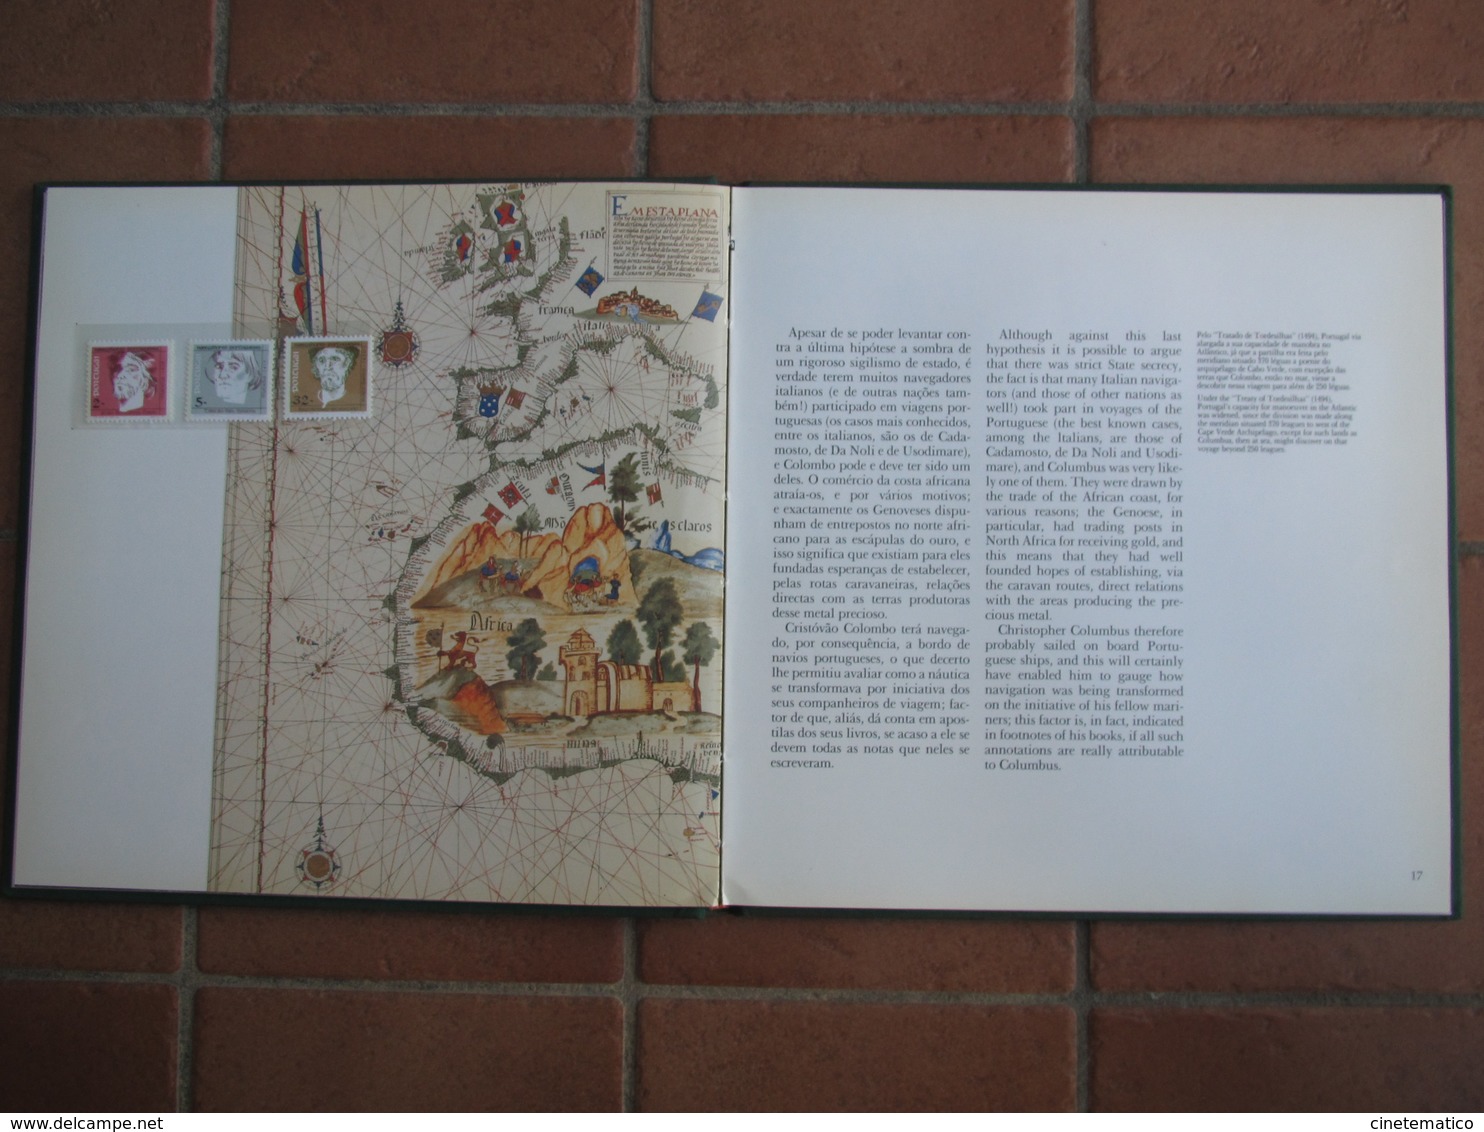 Colombo - Libro Filatelico Emesso Dalle Poste Portoghesi Nel 500° Anniversario Della Scoperta Dell'America - Cristoforo Colombo